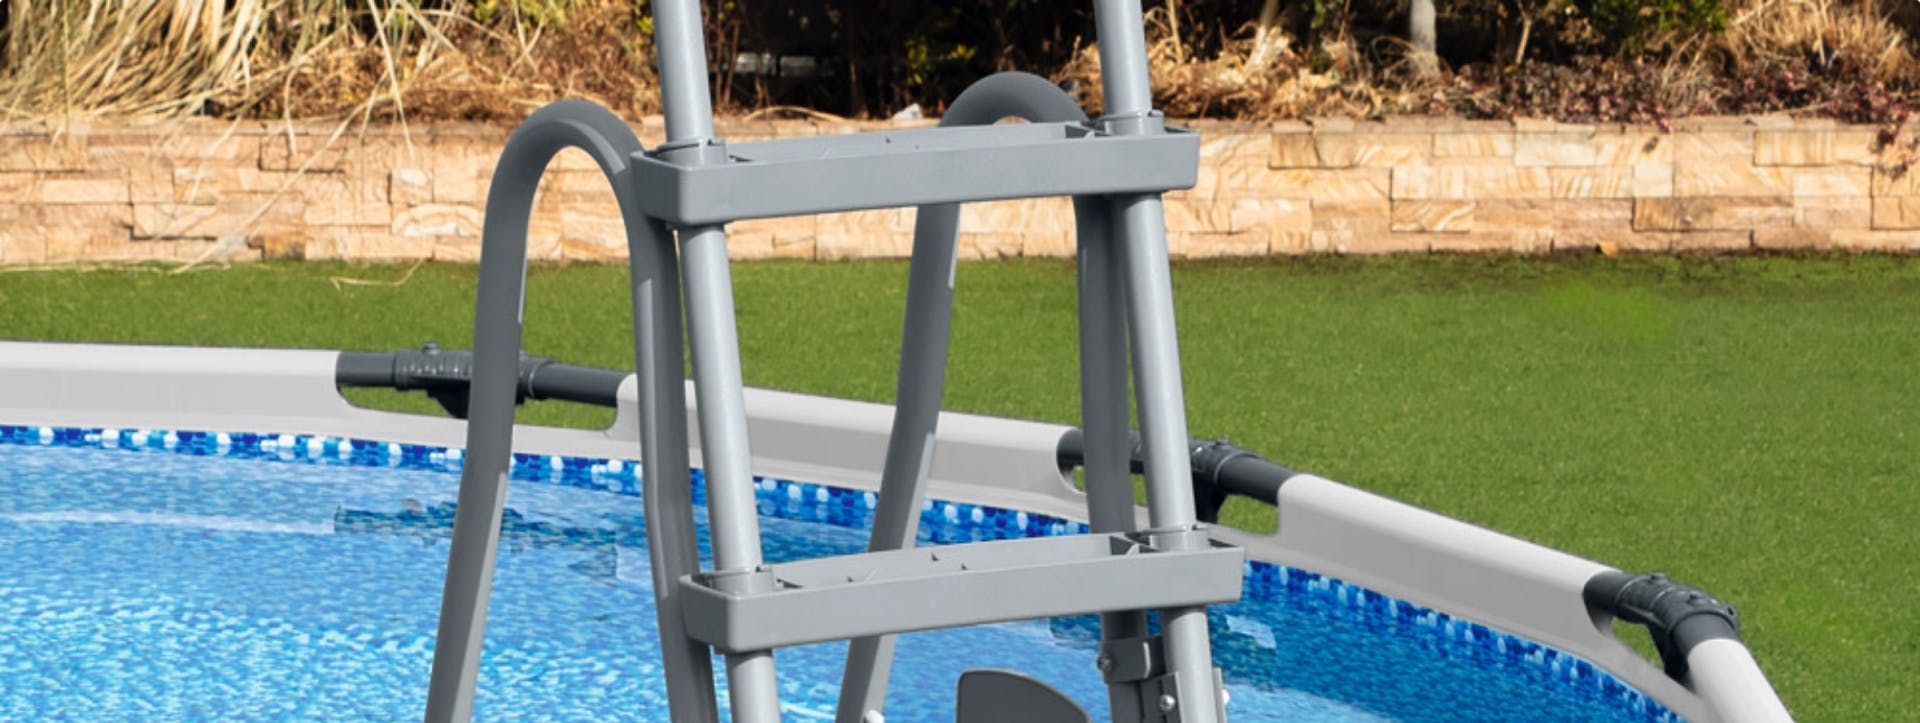 Come montare le scalette per la piscina fuori terra?